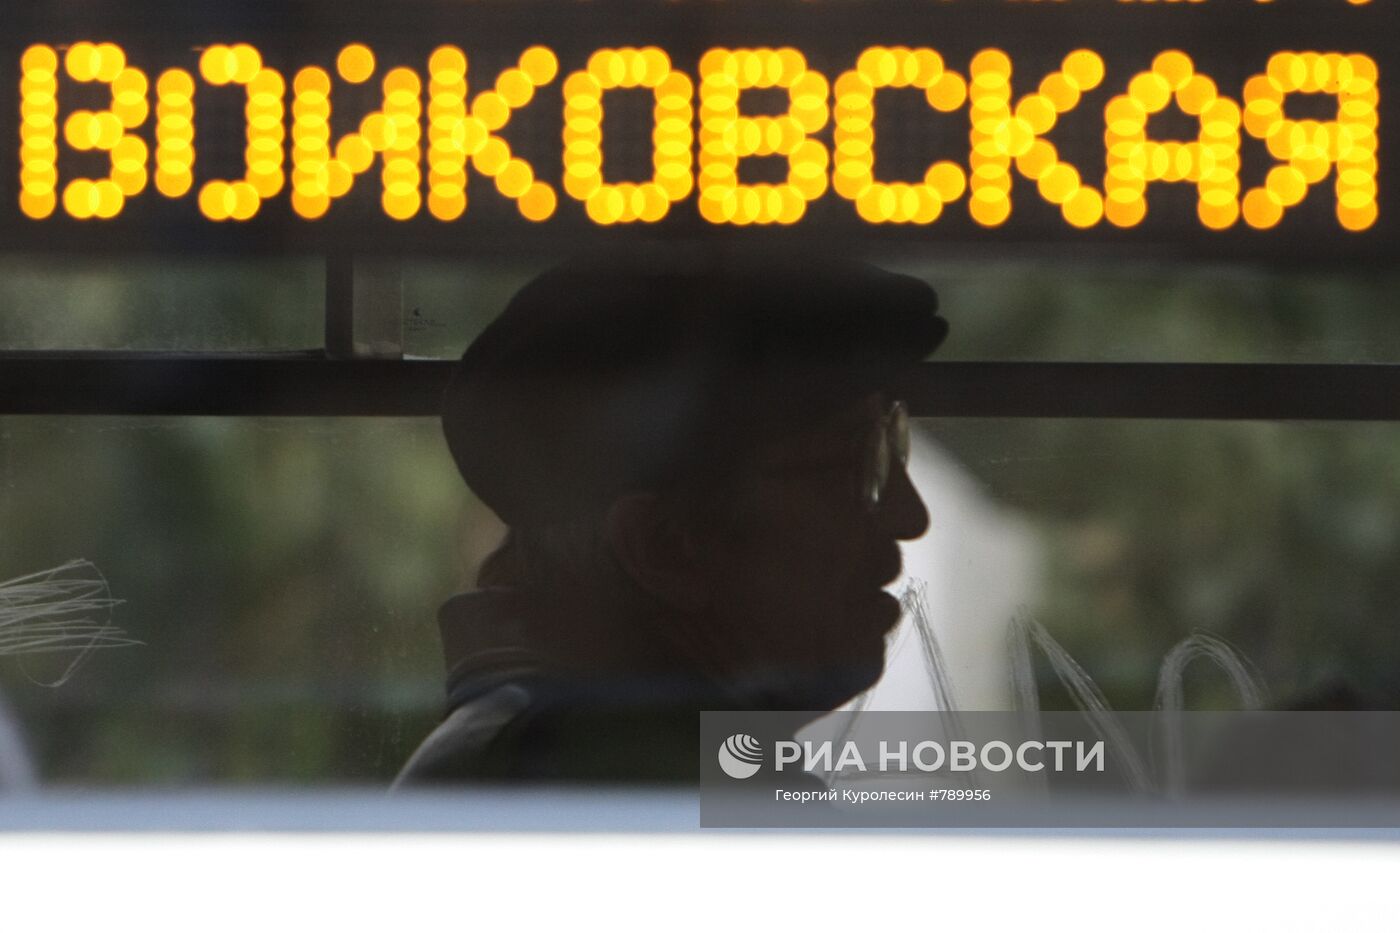 Пассажир в салоне трамвая у станции метро "Войковская"